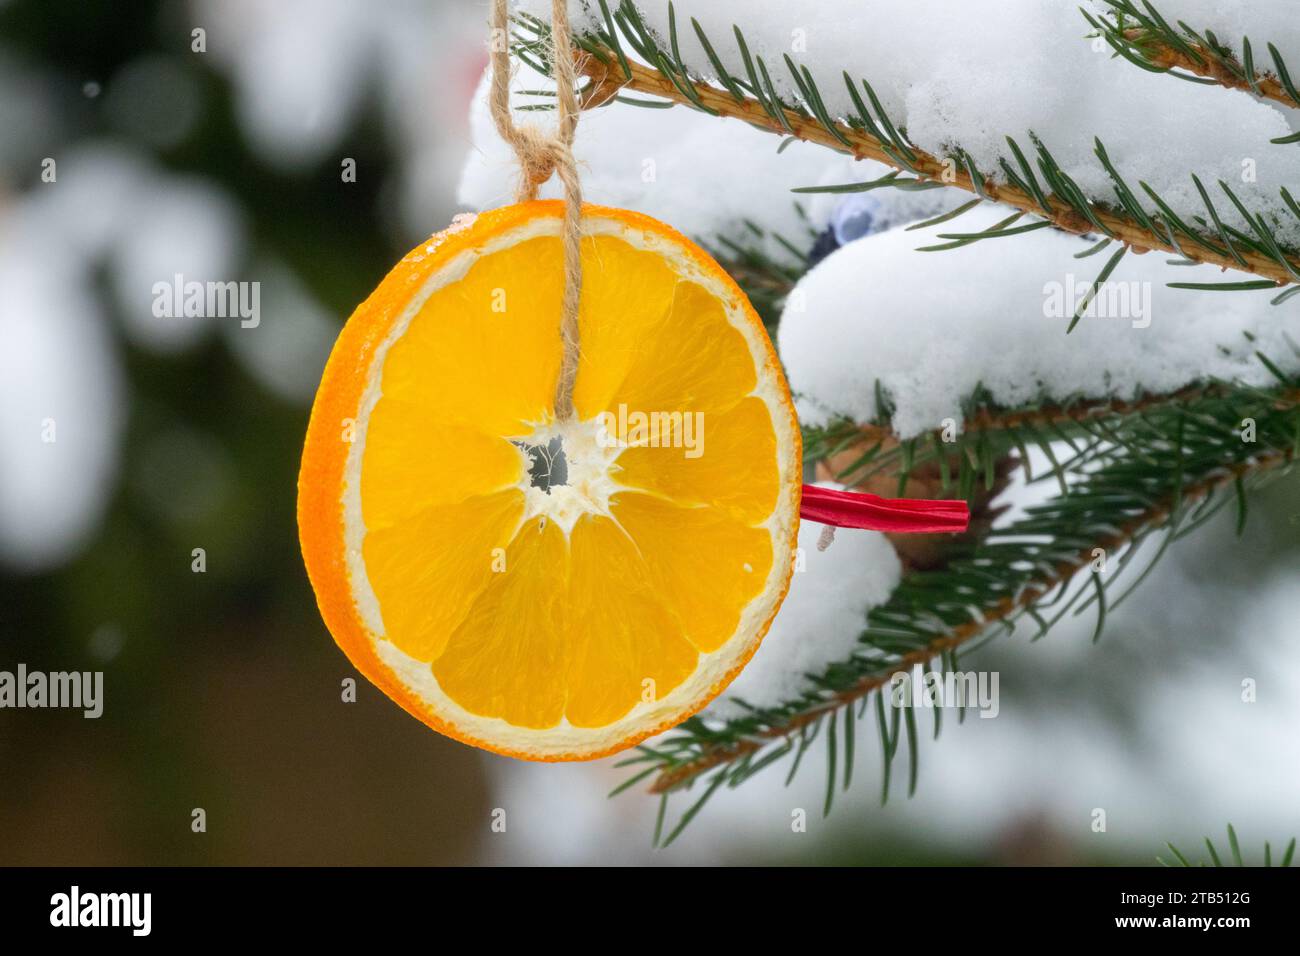 Ornamento natalizio rotondo, arancia secca, decorazione, appendiabiti, ricoperti di neve, decorazioni natalizie esterne sugli alberi all'aperto Foto Stock